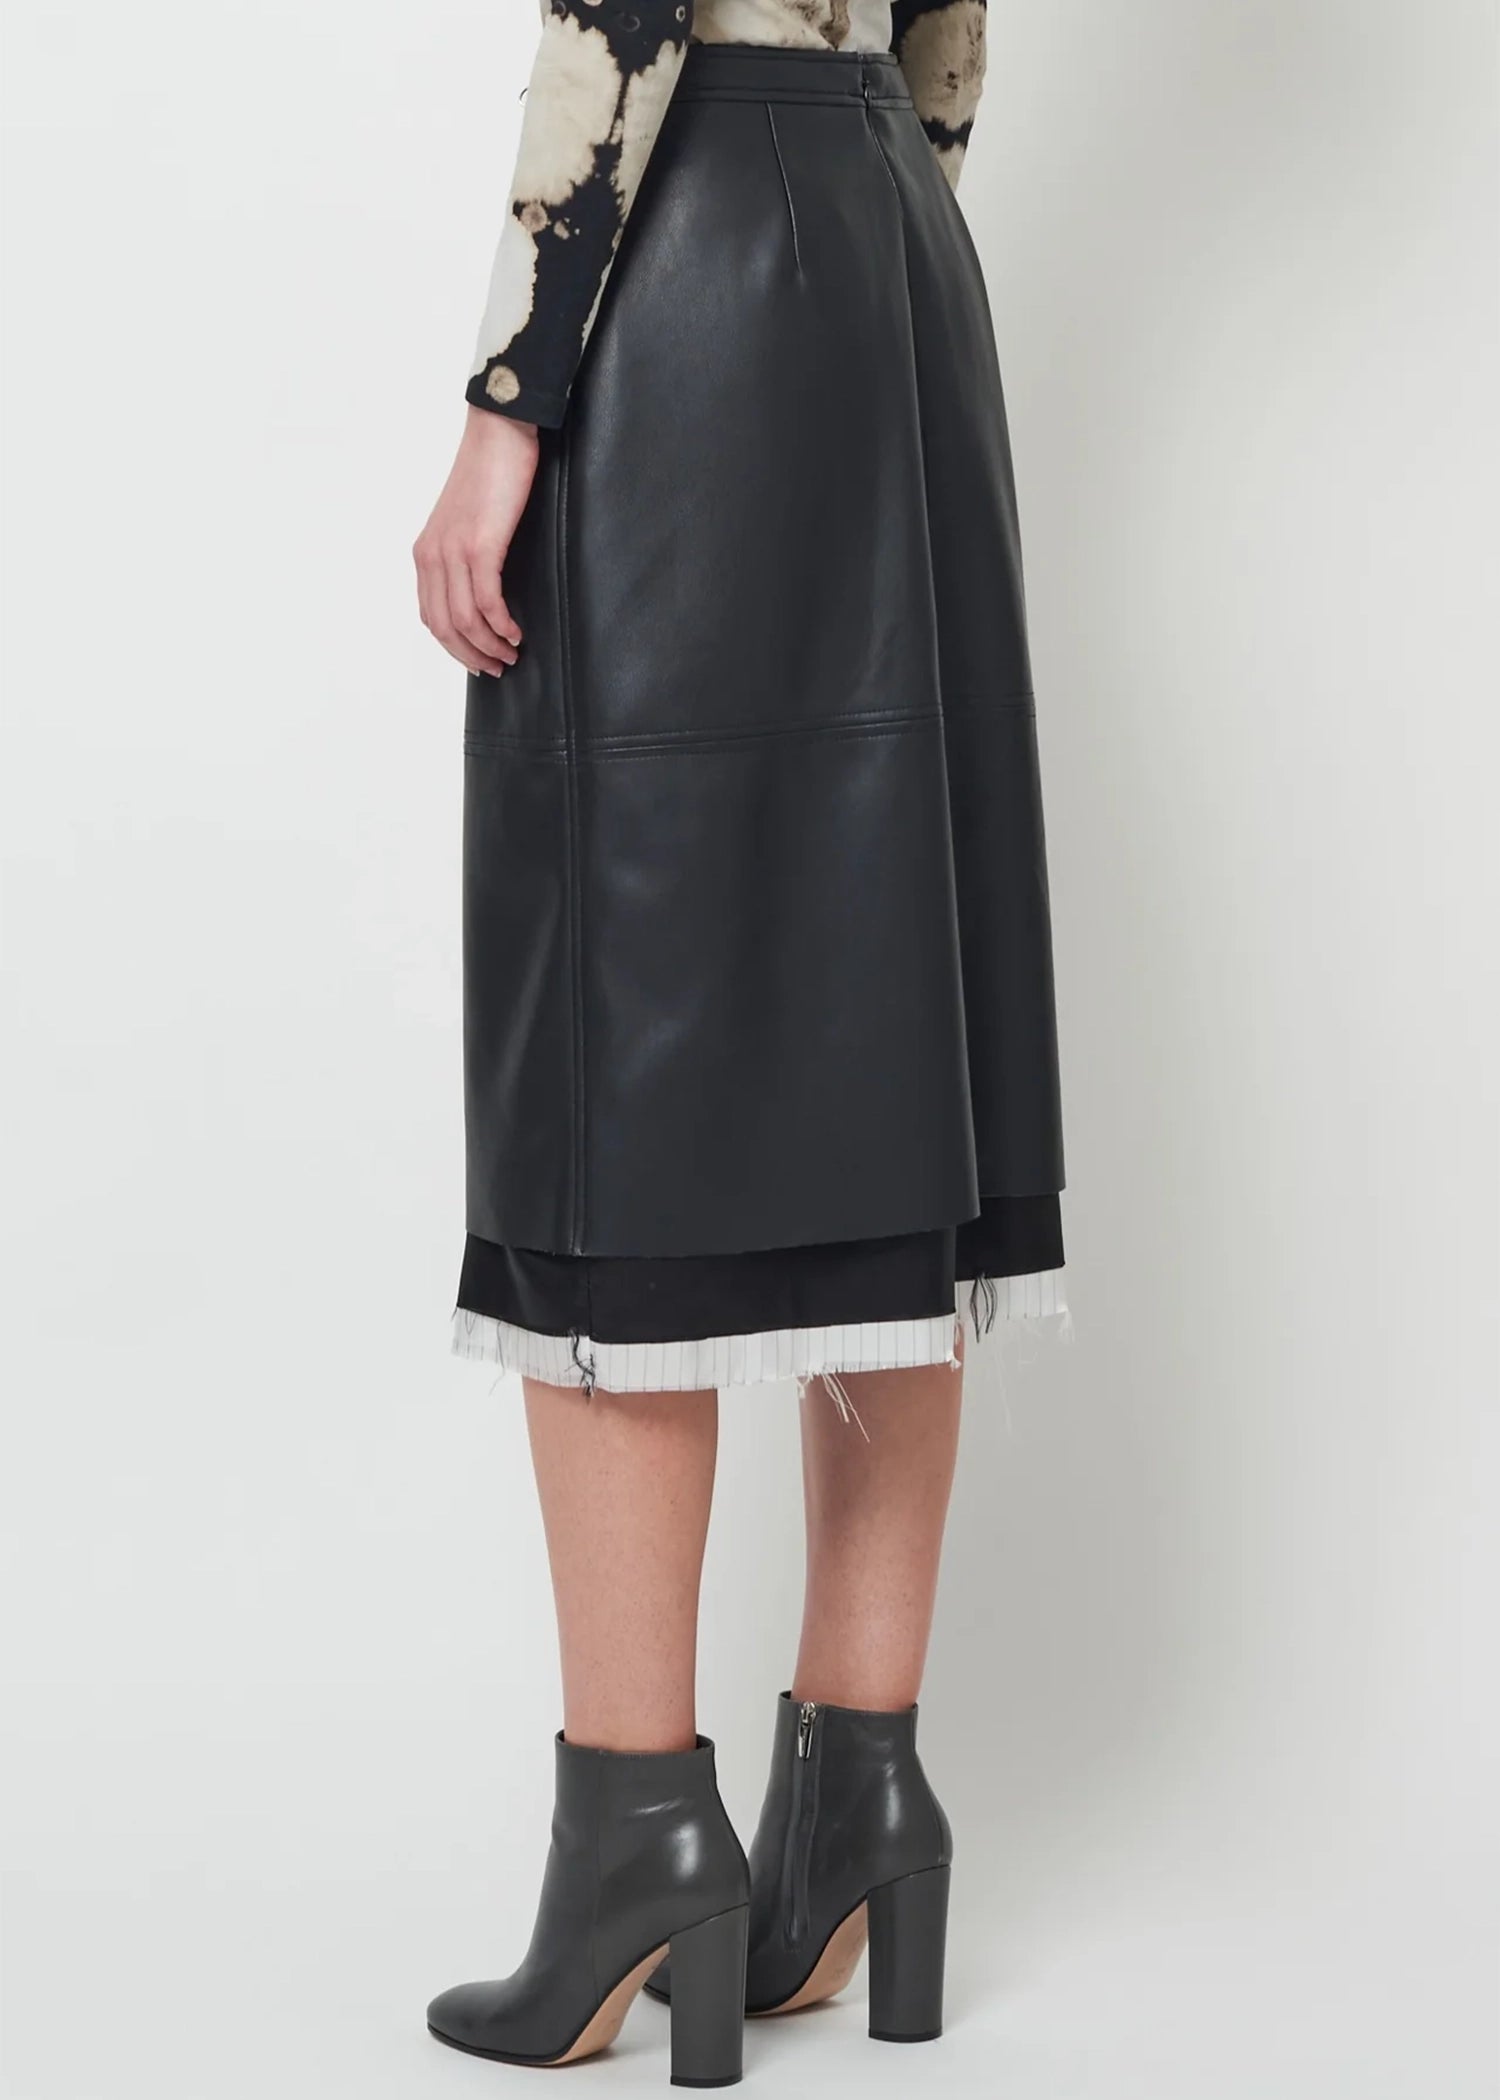 Raquel-Allegra-Faux-Leather-Black-Aurora-Skirt